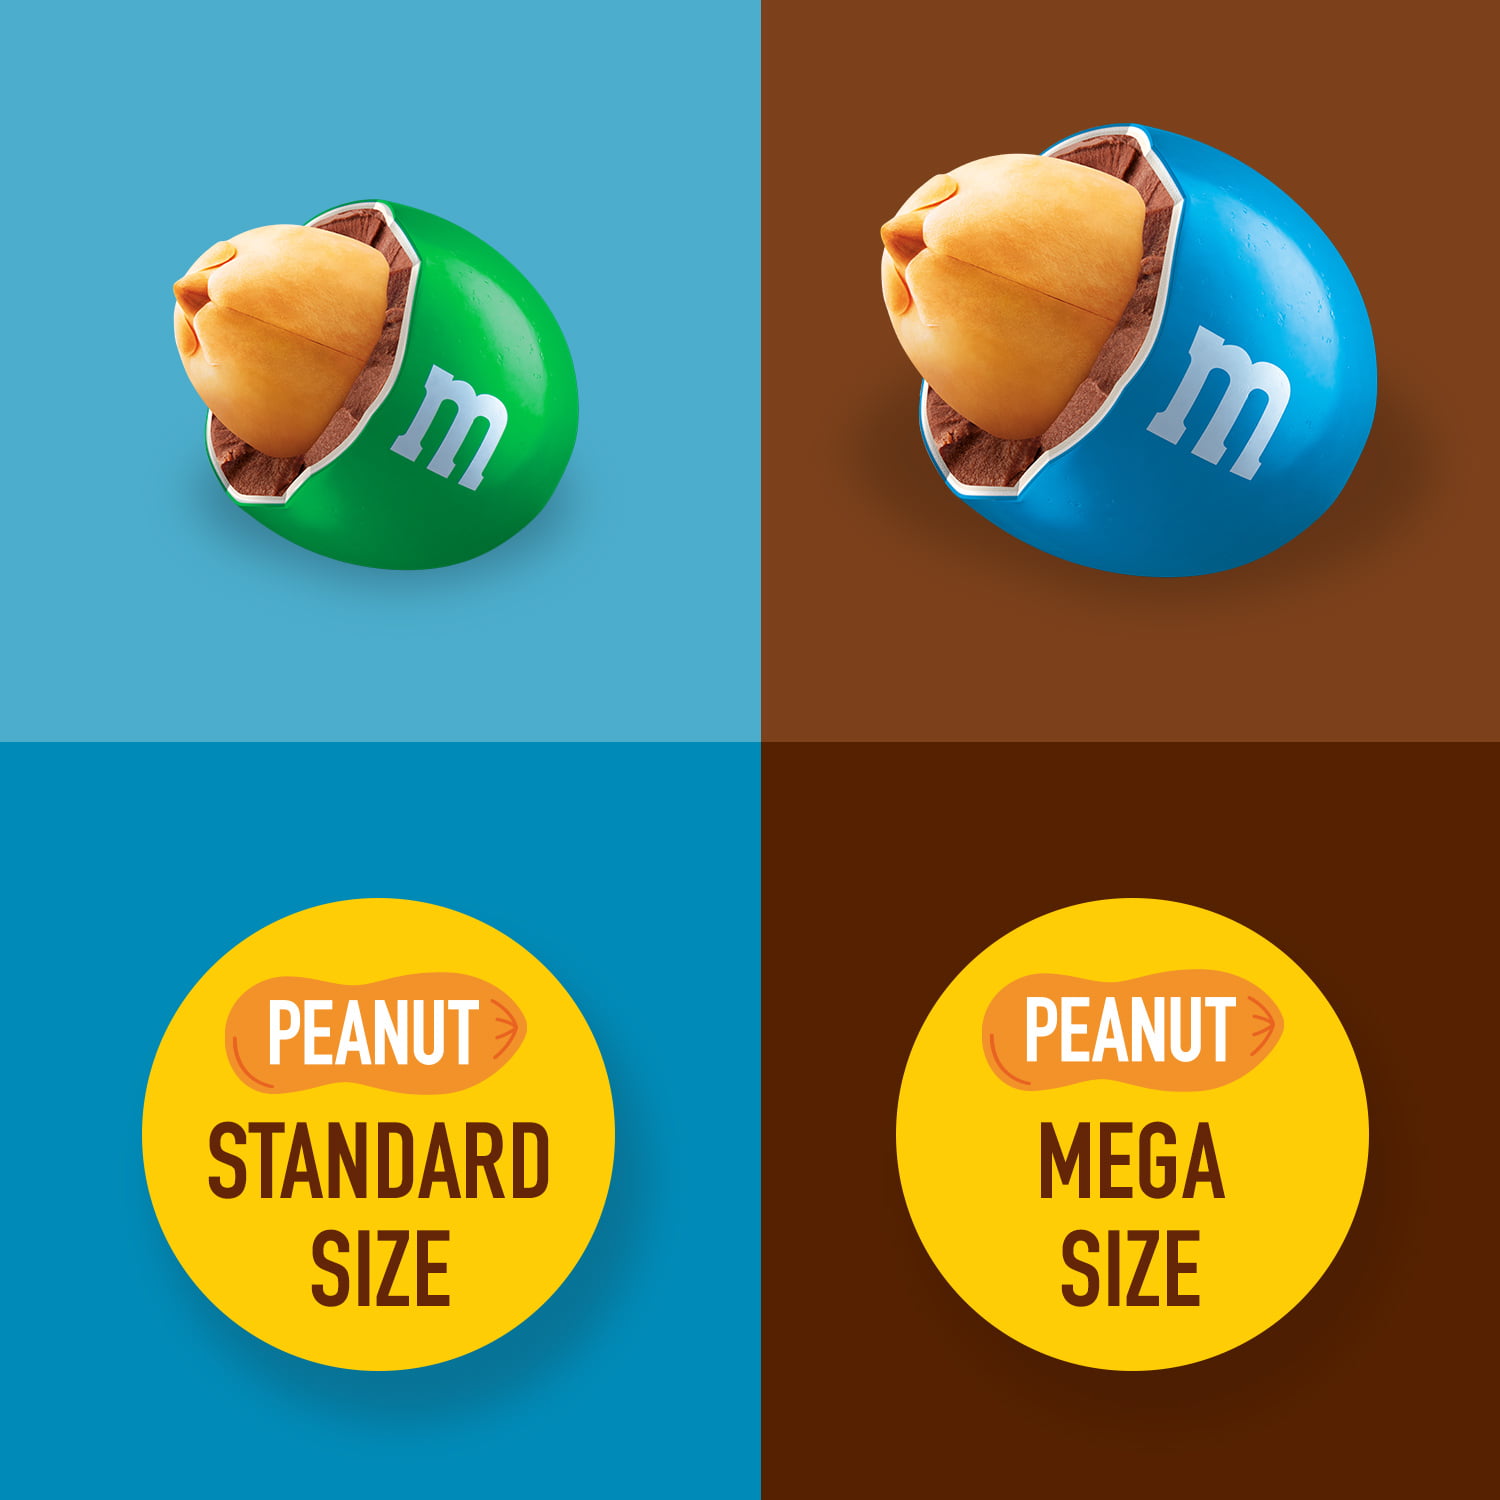 Mega Peanut M&M's  With really gigantic peanuts